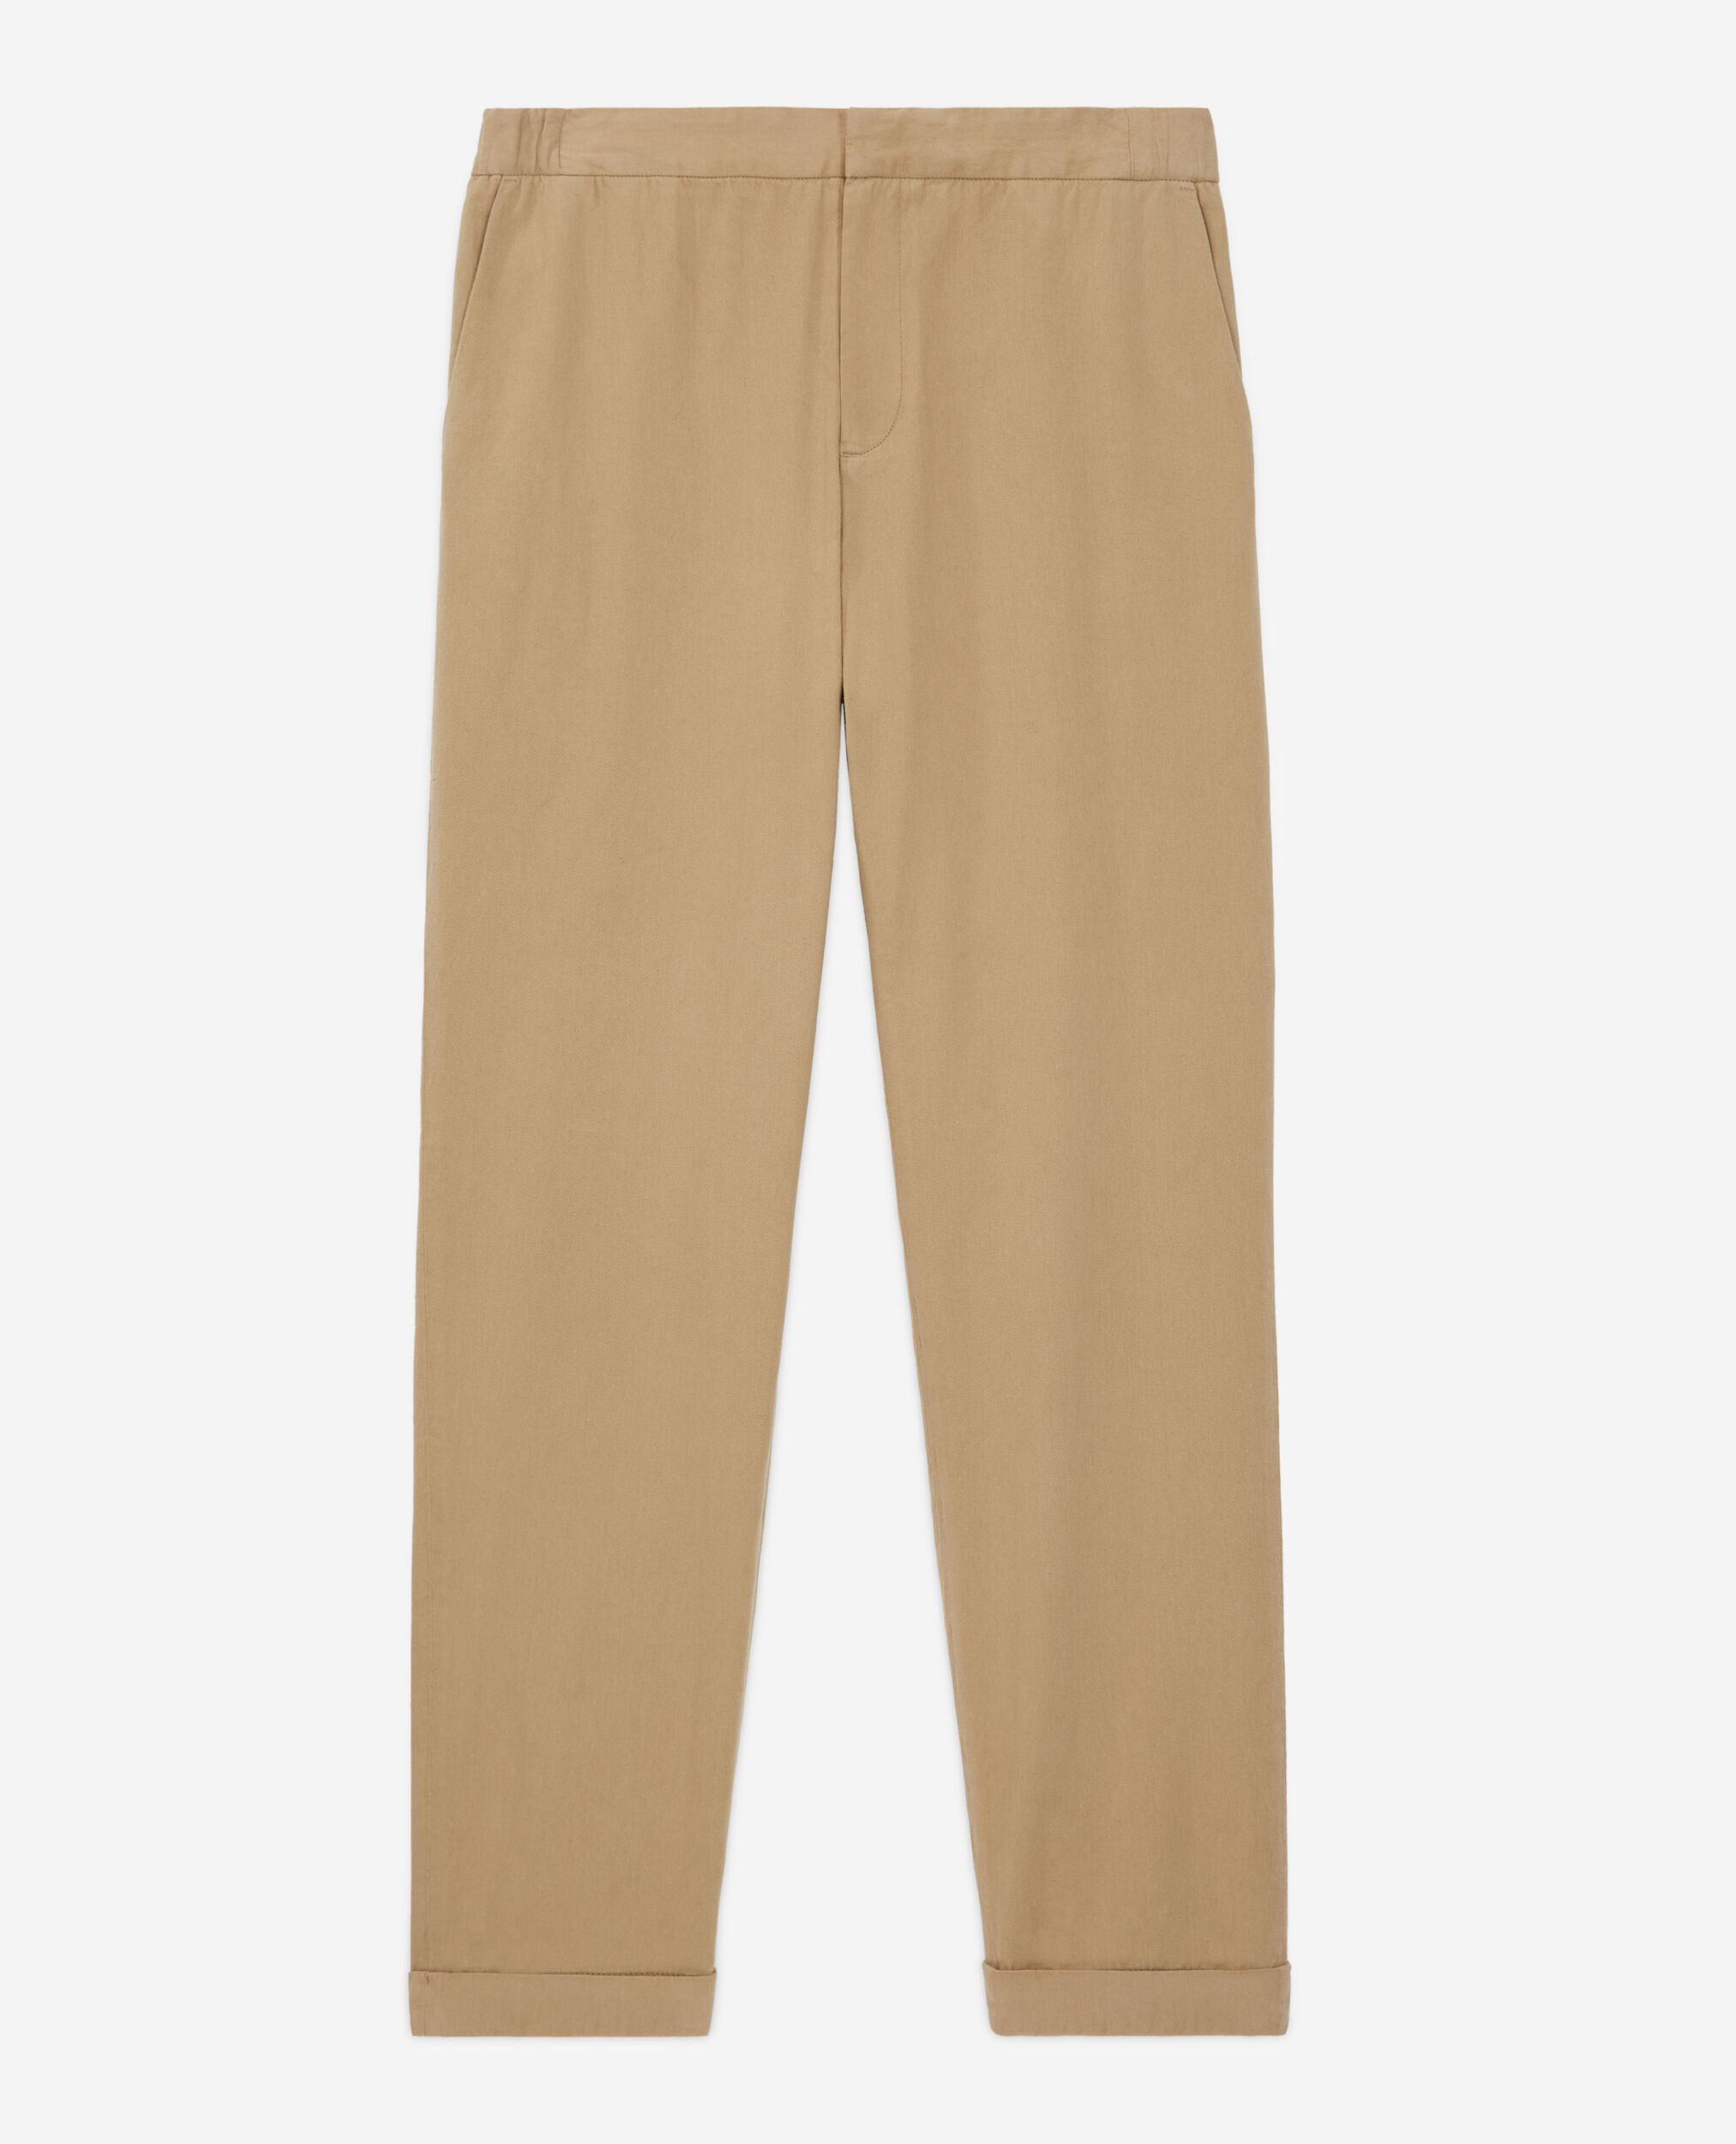 Pantalon beige, BEIGE, hi-res image number null